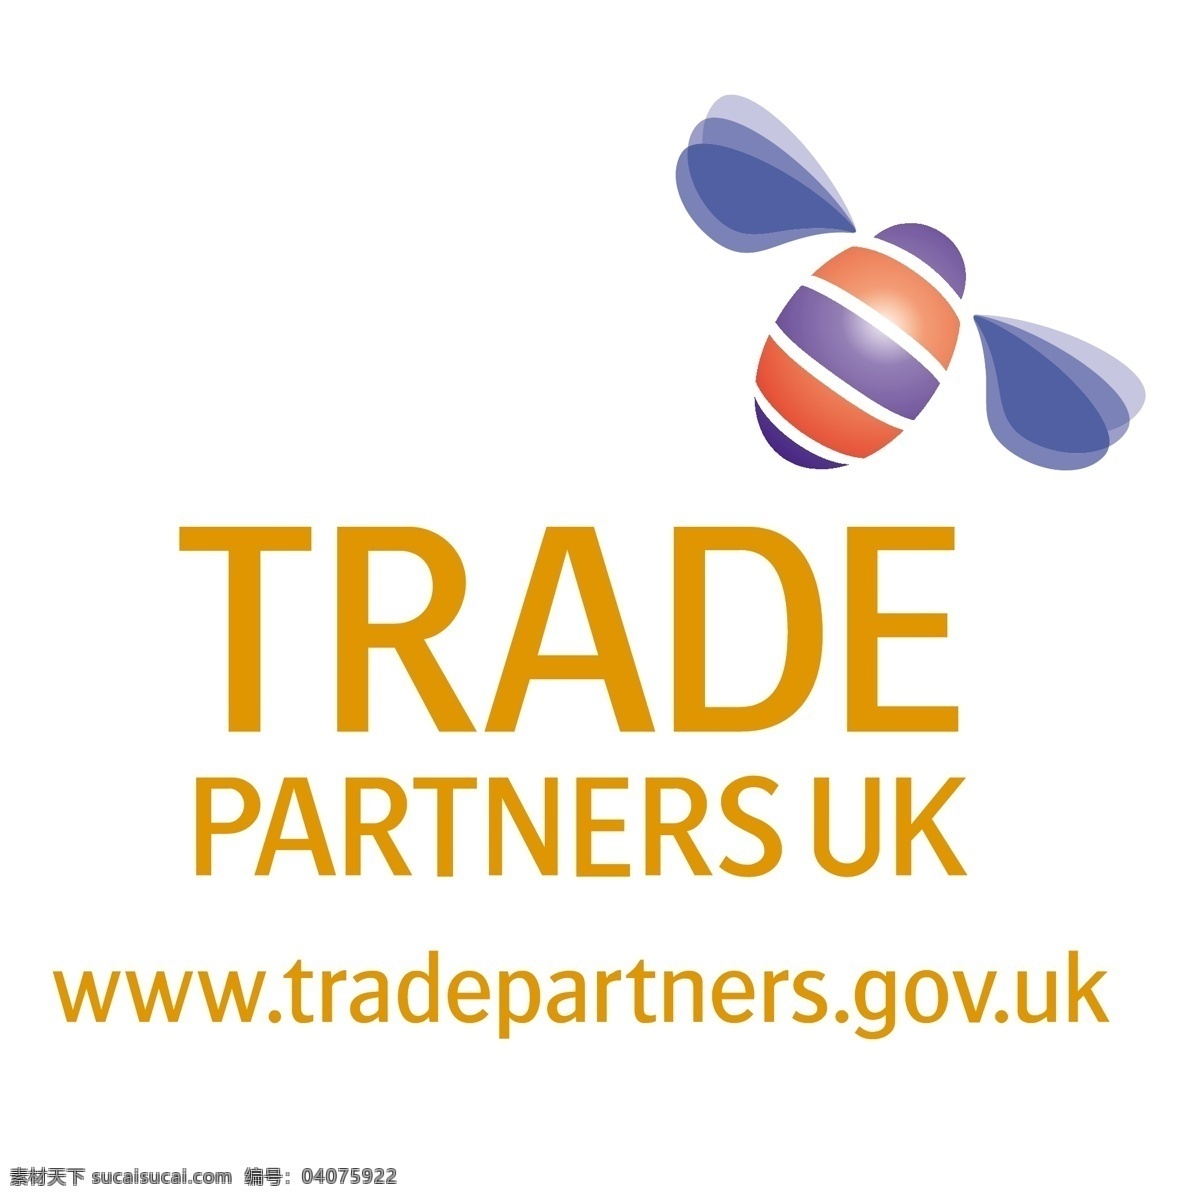 英国贸易伙伴 合作伙伴 贸易 贸易合作伙伴 矢量英国贸易 英国的贸易 英国贸易标志 矢量 英国 标志 英国免费矢量 英国自由向量 向量的英国 免费 图形 英国设计 英国下载矢量 建筑家居